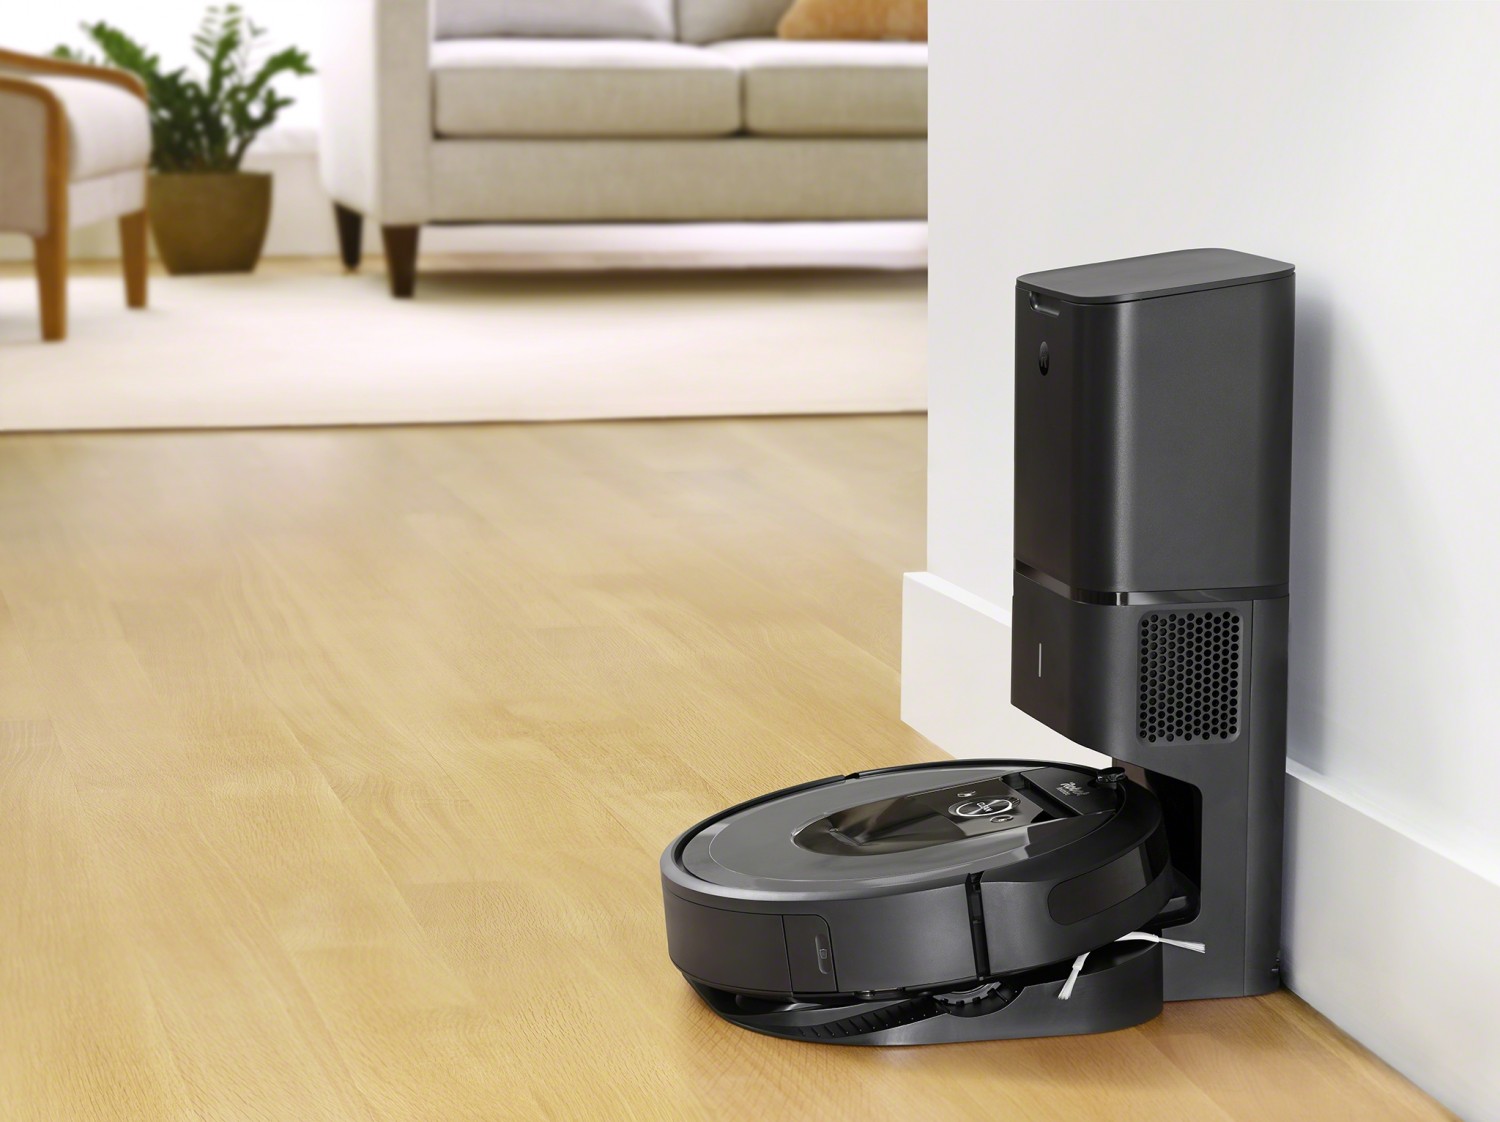 iRobot Roomba i7+ robotporszívó bemutatása